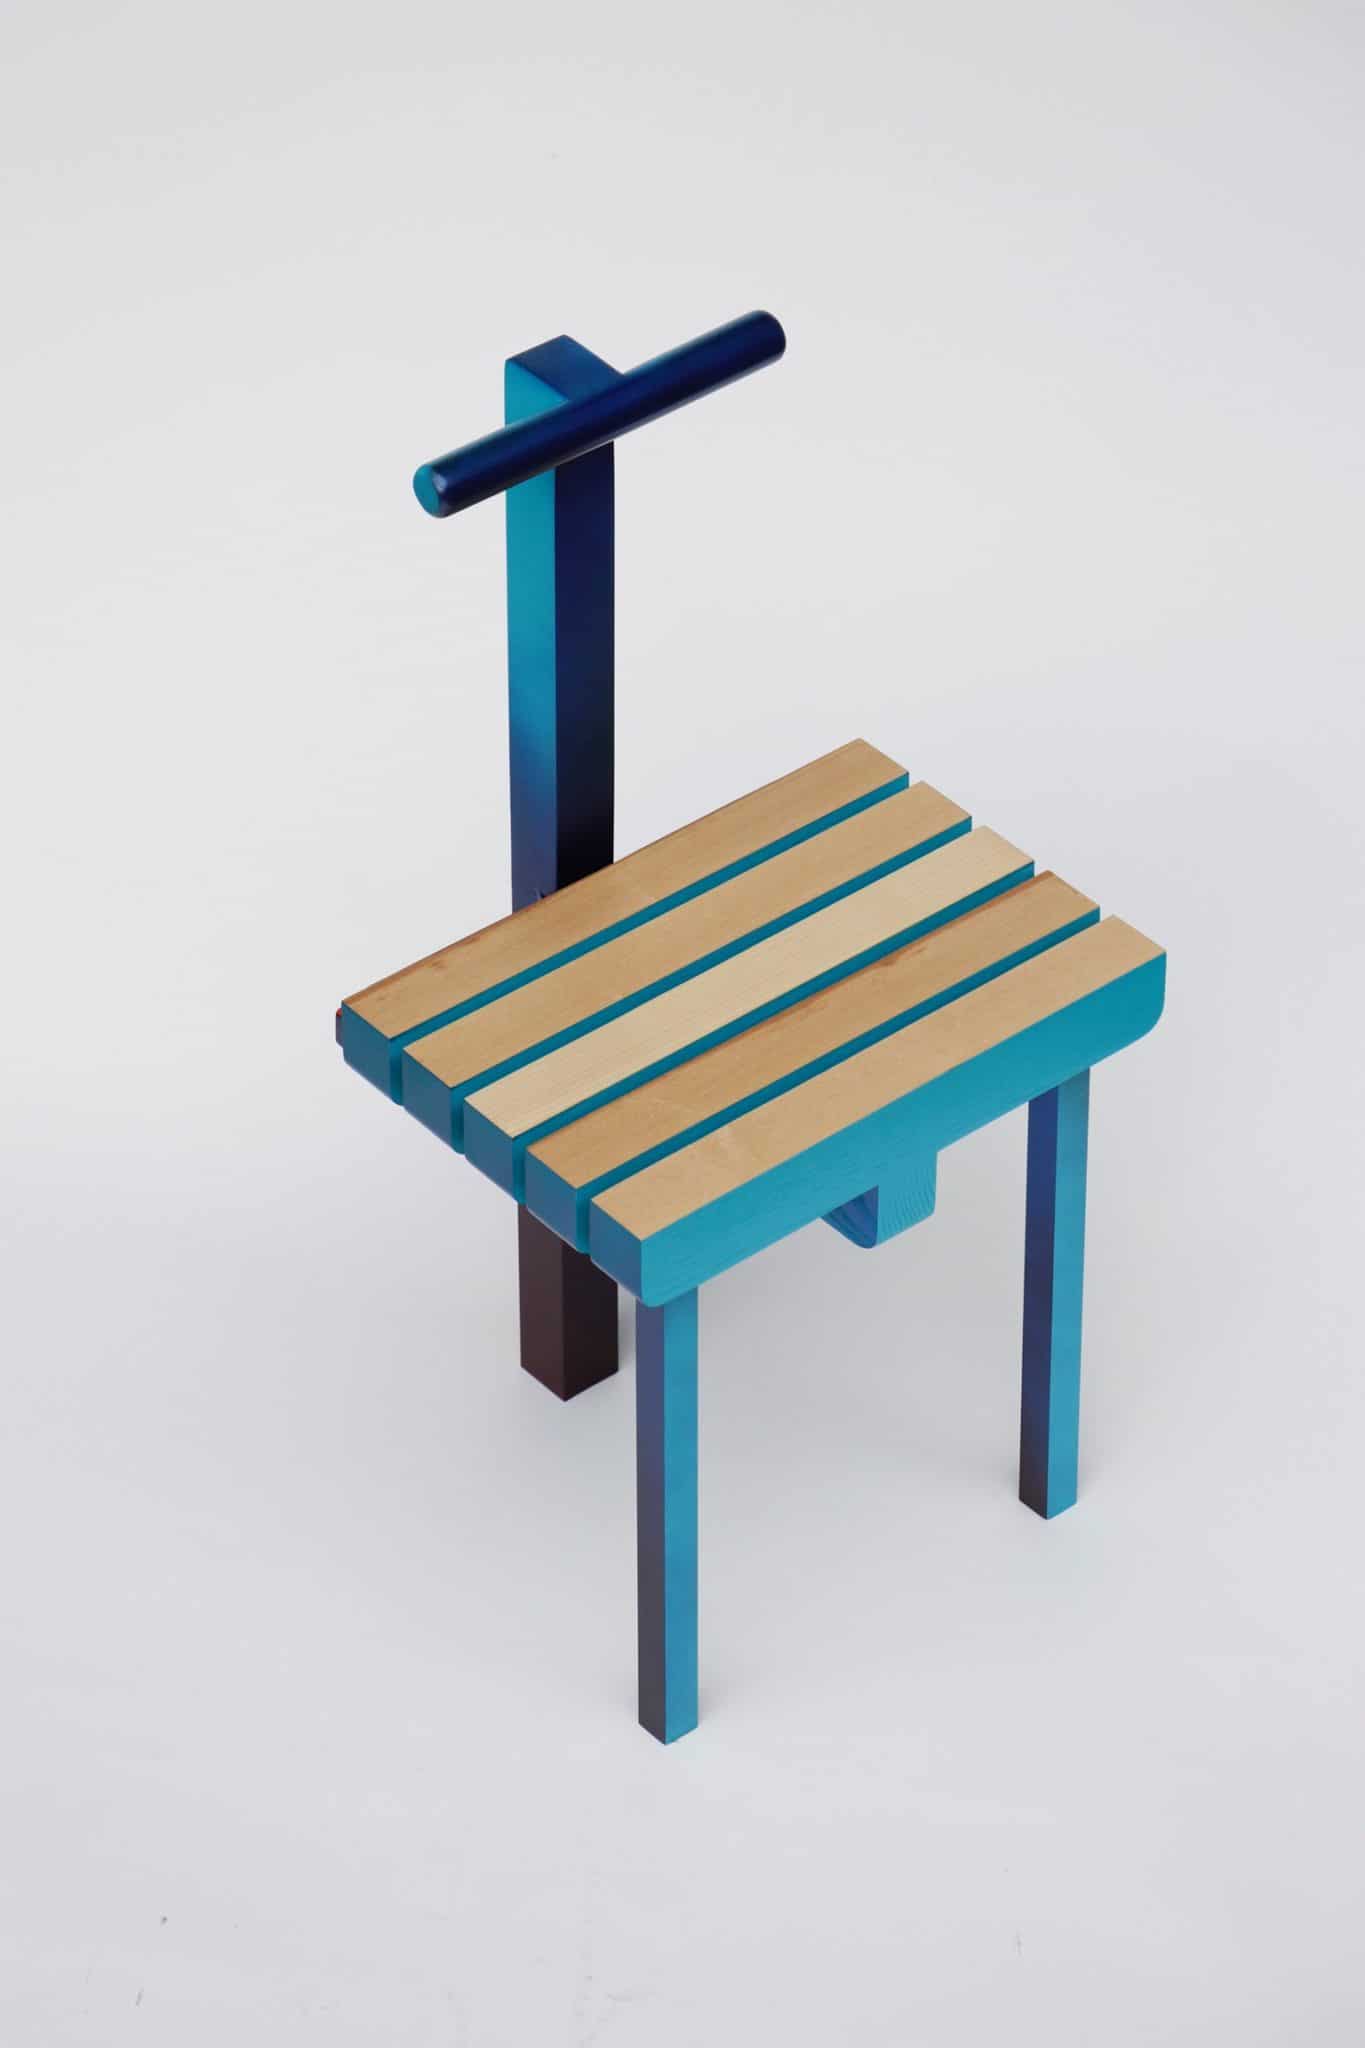 Malcolm Majer crée la Chair 3.2 à l'occasion d'Art Elysées pour Huskdesignblog, à Paris.